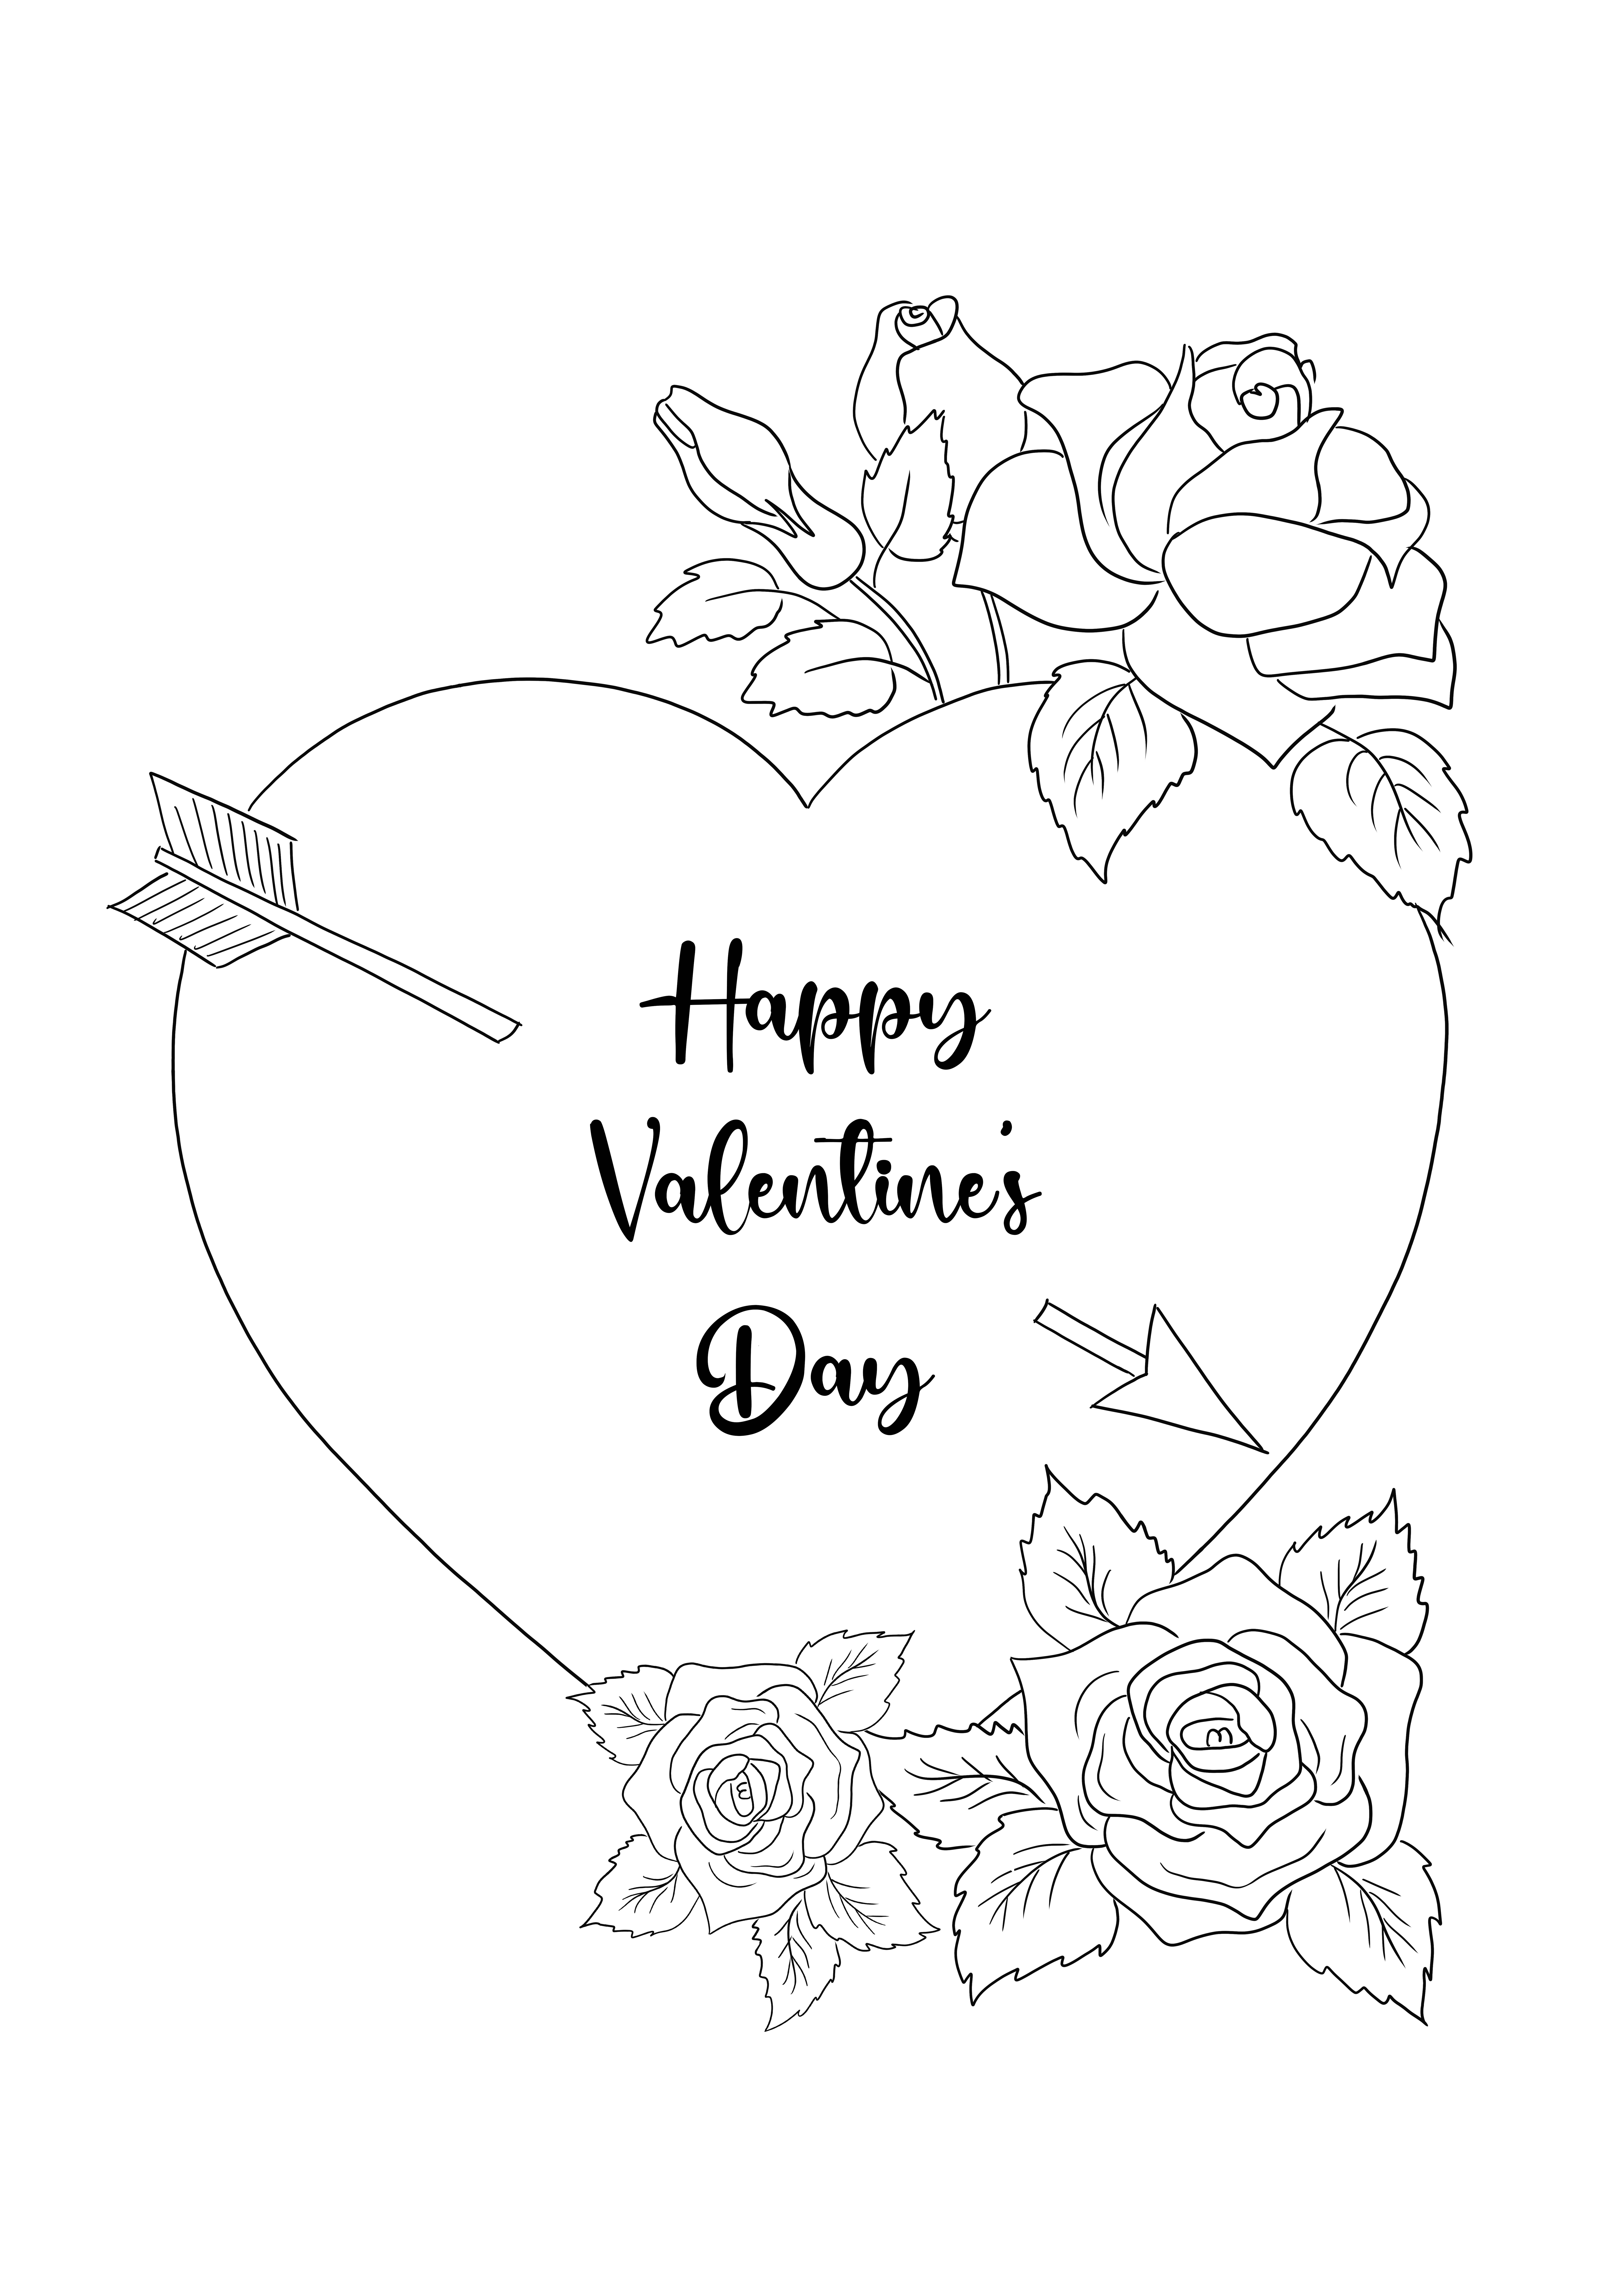 Happy Valentine's Day Card kleurplaat voor alle geliefden, klein of groot om gratis te downloaden kleurplaat